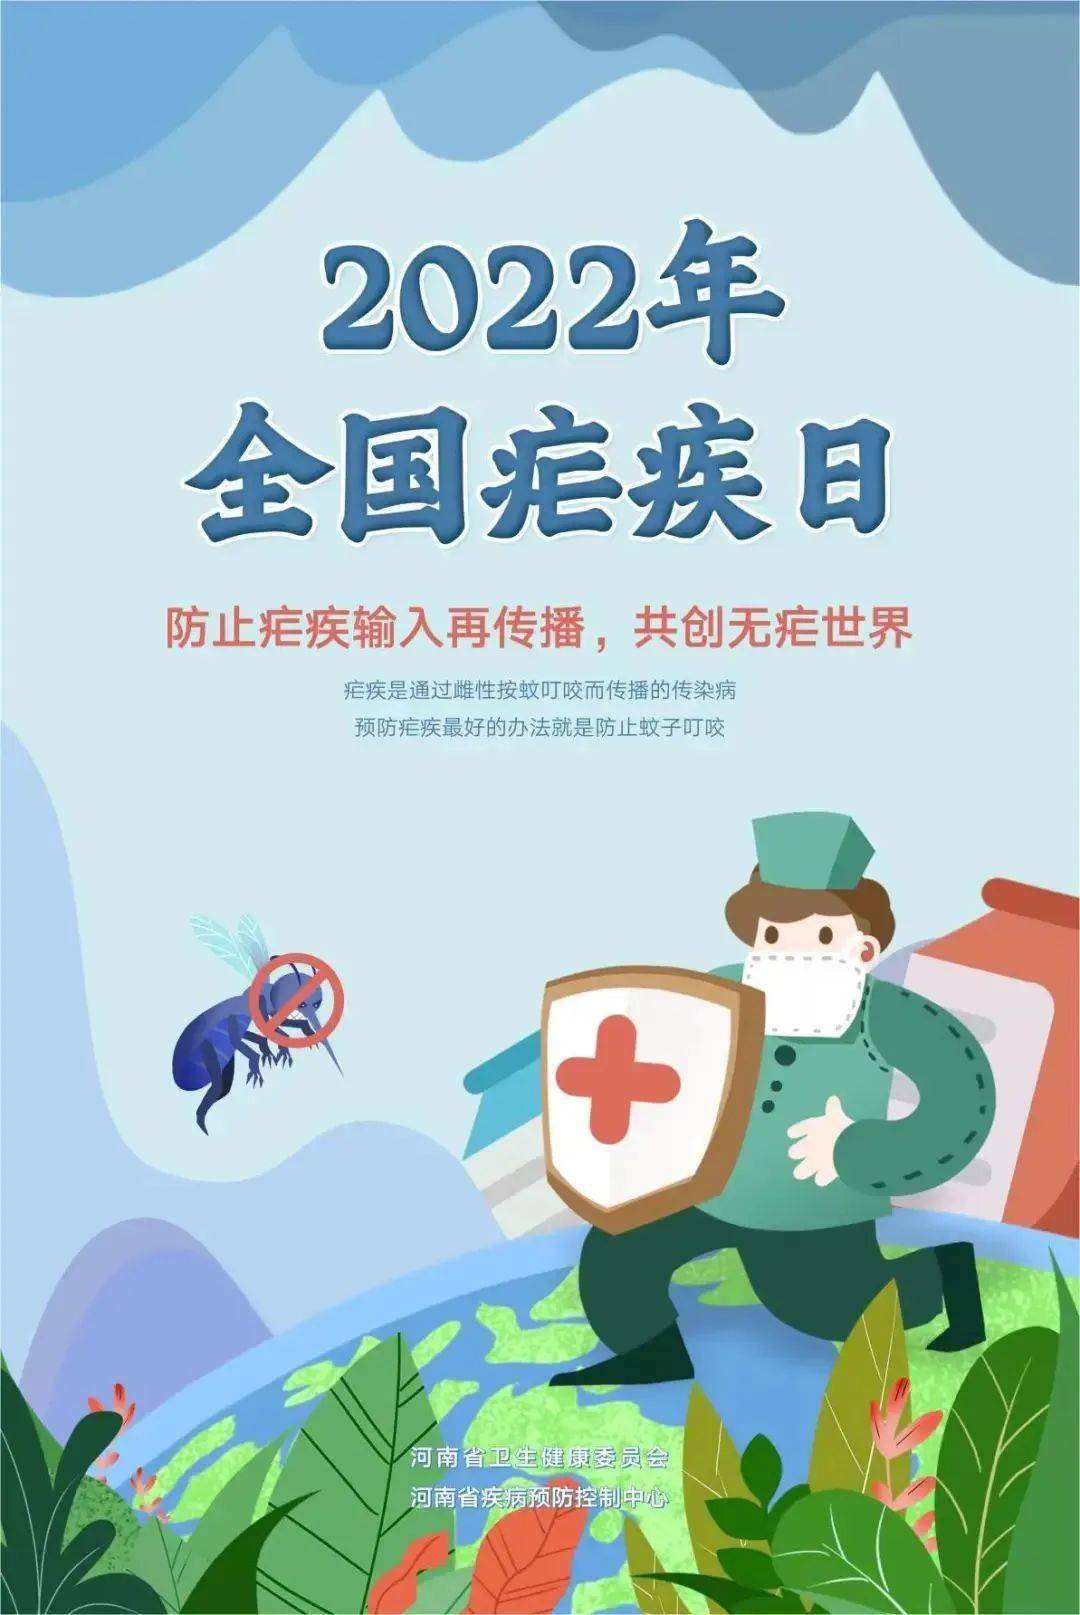 共创无疟世界全国疟疾日根据世卫组织最新的《世界疟疾报告》,2021年